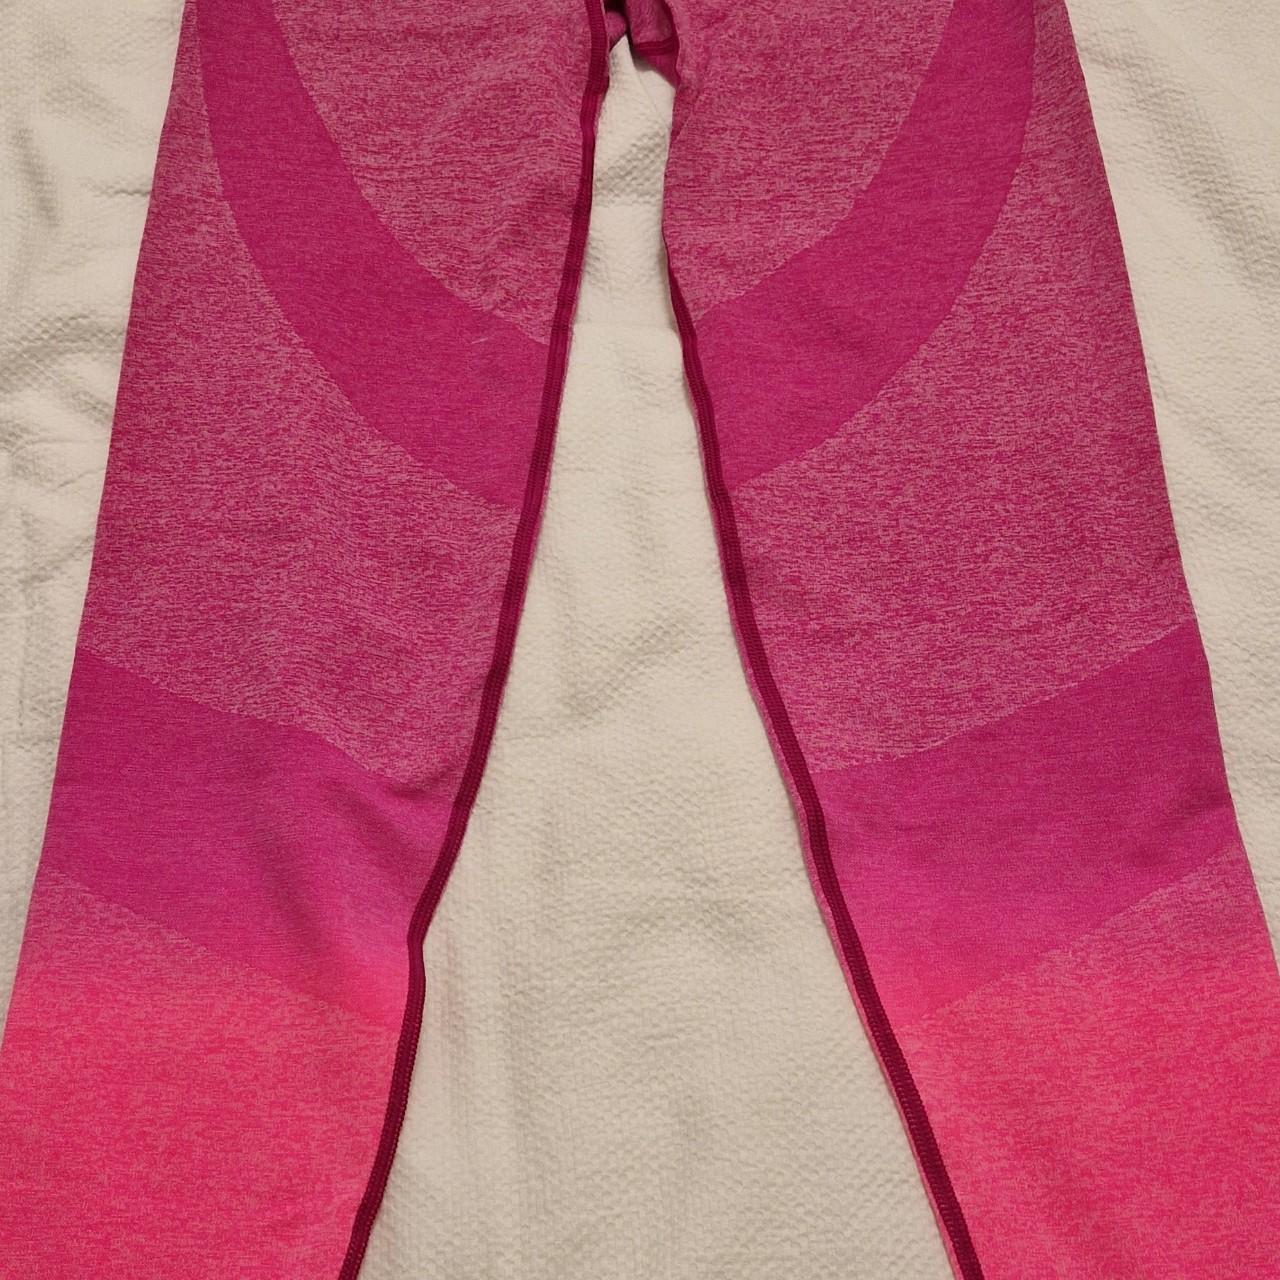 PINK Victoria's Secret, Pants & Jumpsuits, Victorias Secret Pink Foldover  Yoga Leggingssz S